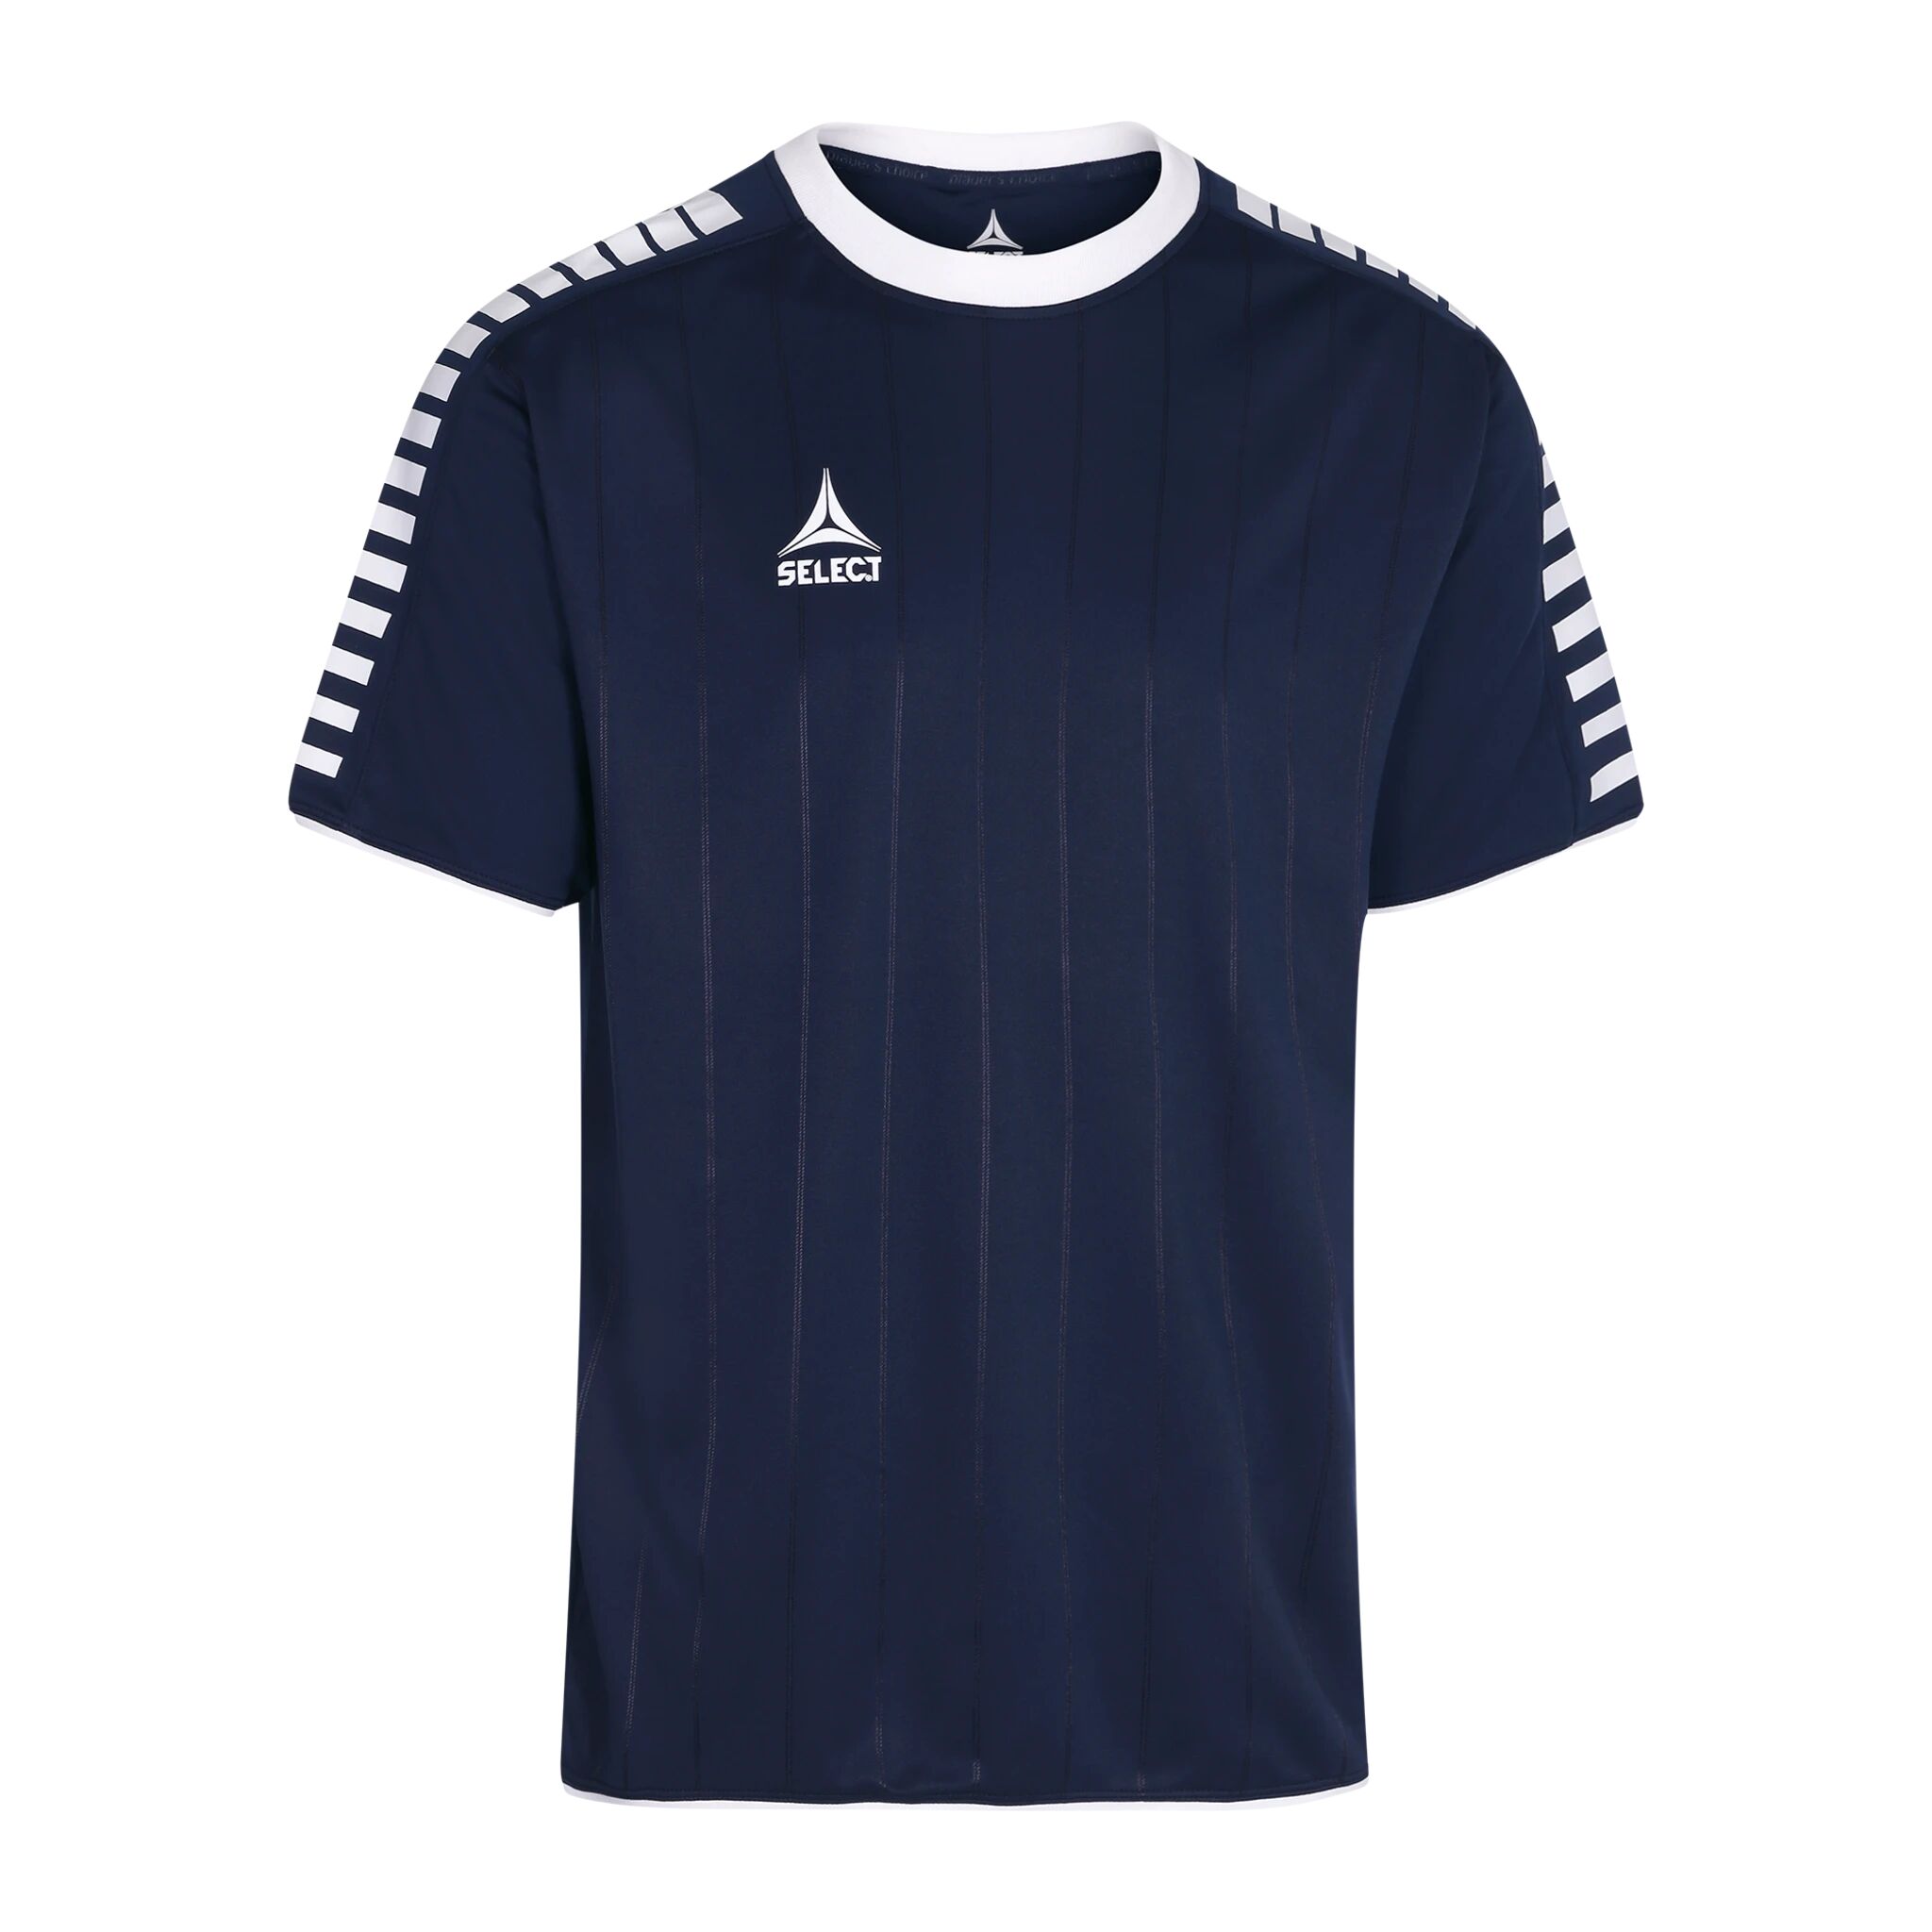 Select Player shirt S/S Argentina, fotballtrøye senior XXXL navy